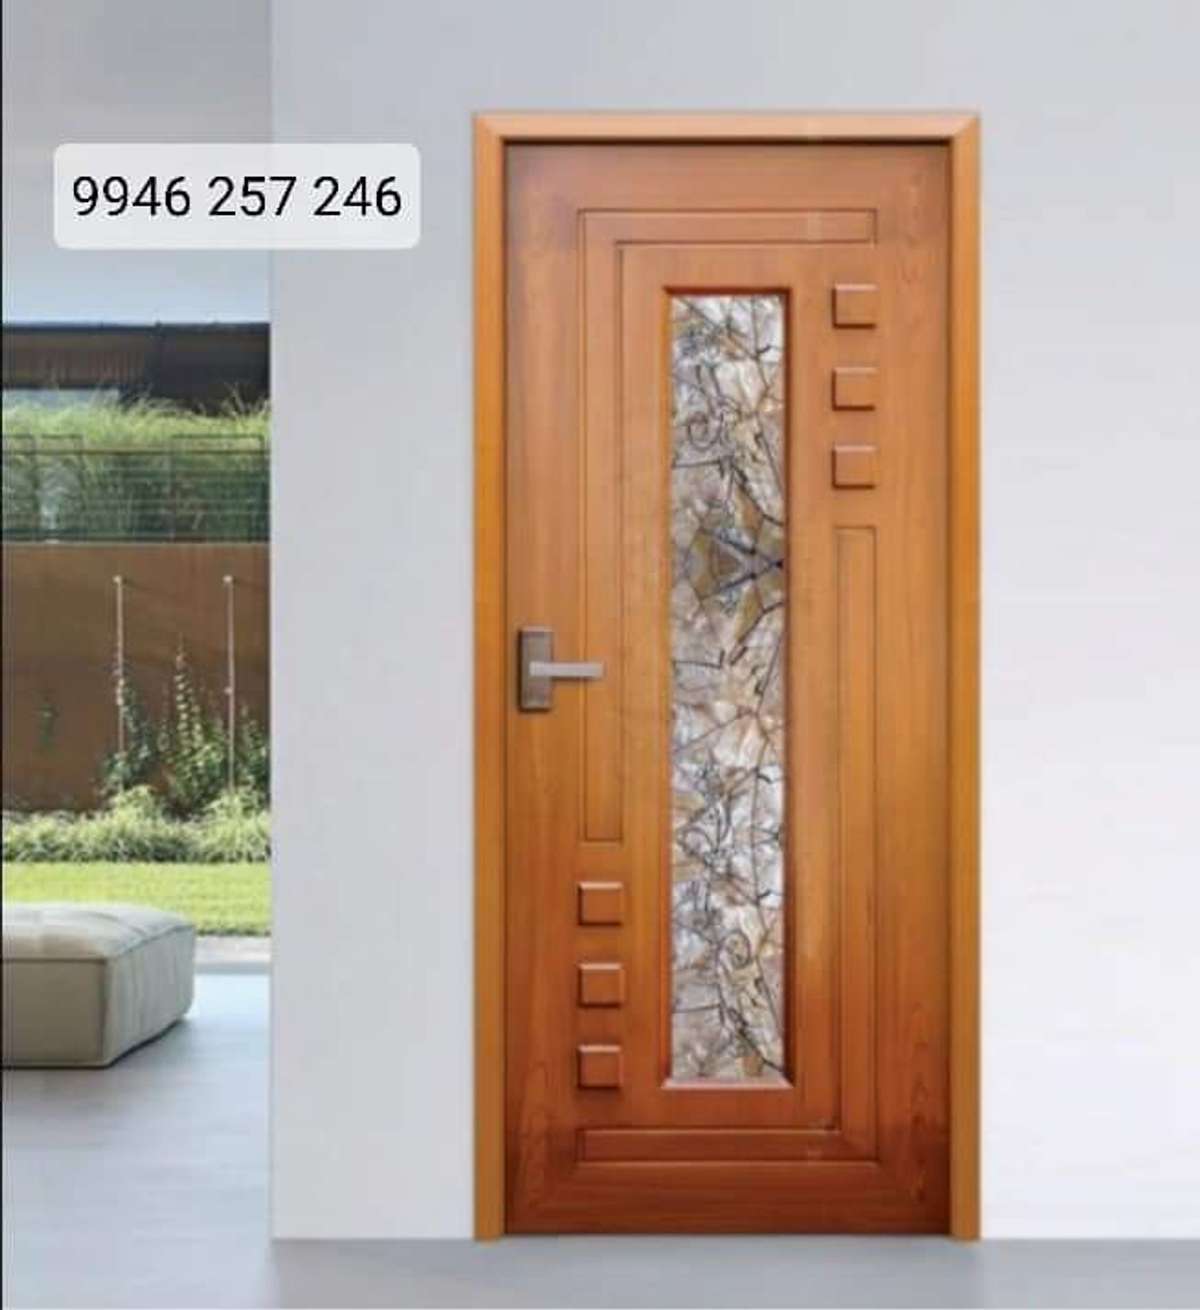 Fibre Bathroom Doors | WhatsApp: 9946 257 246

#doors #door #FibreDoors